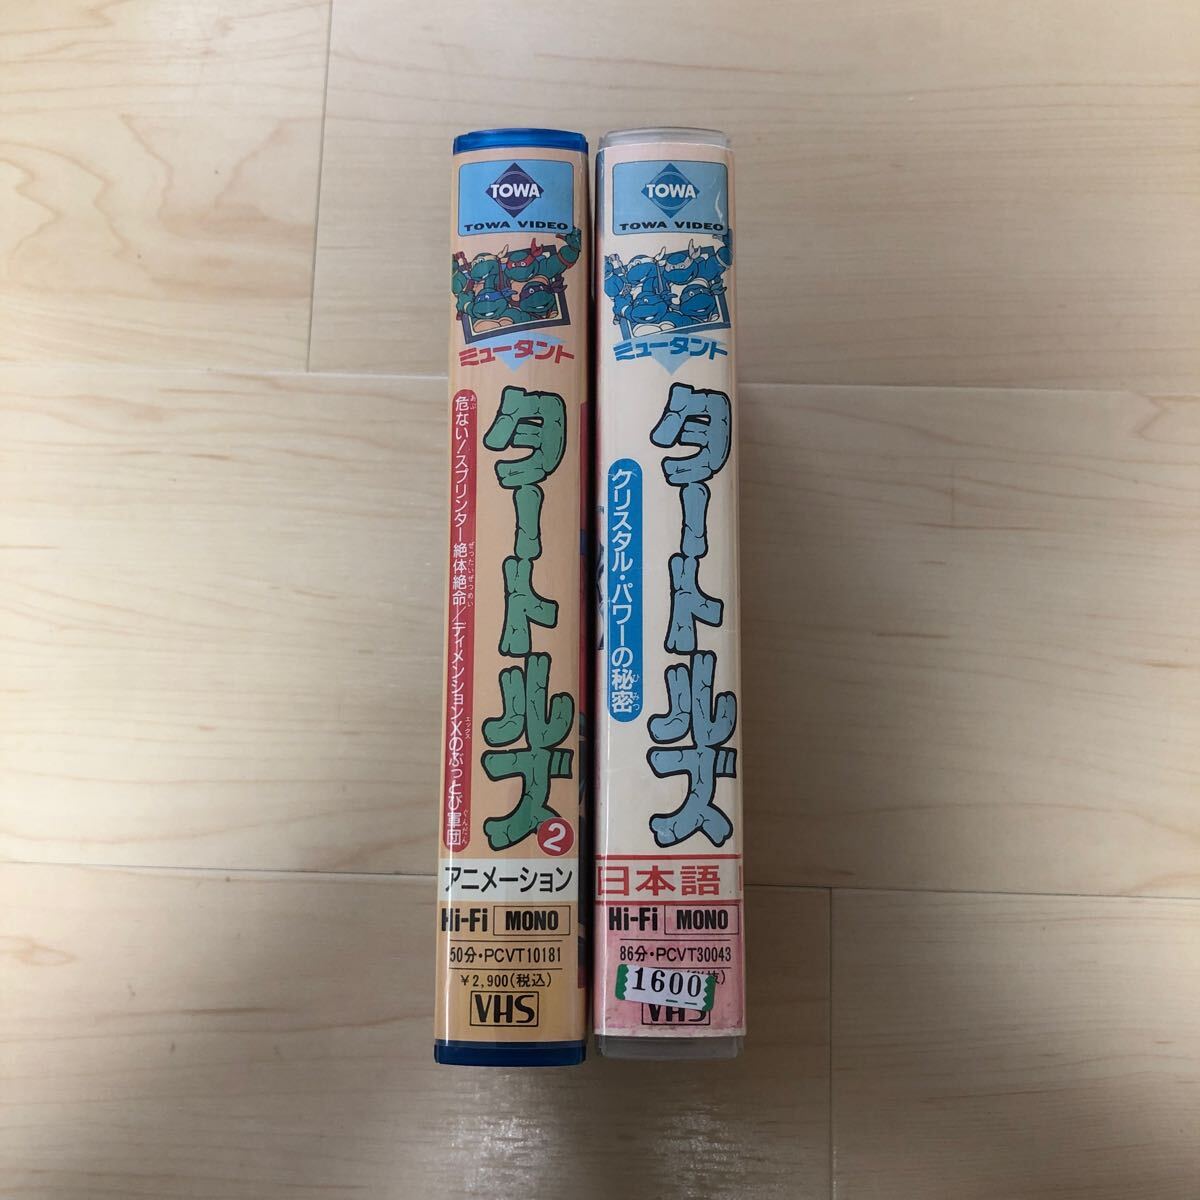 ... TANTO  ...  японский язык  издание  VHS  видео    2 штуки  комплект  